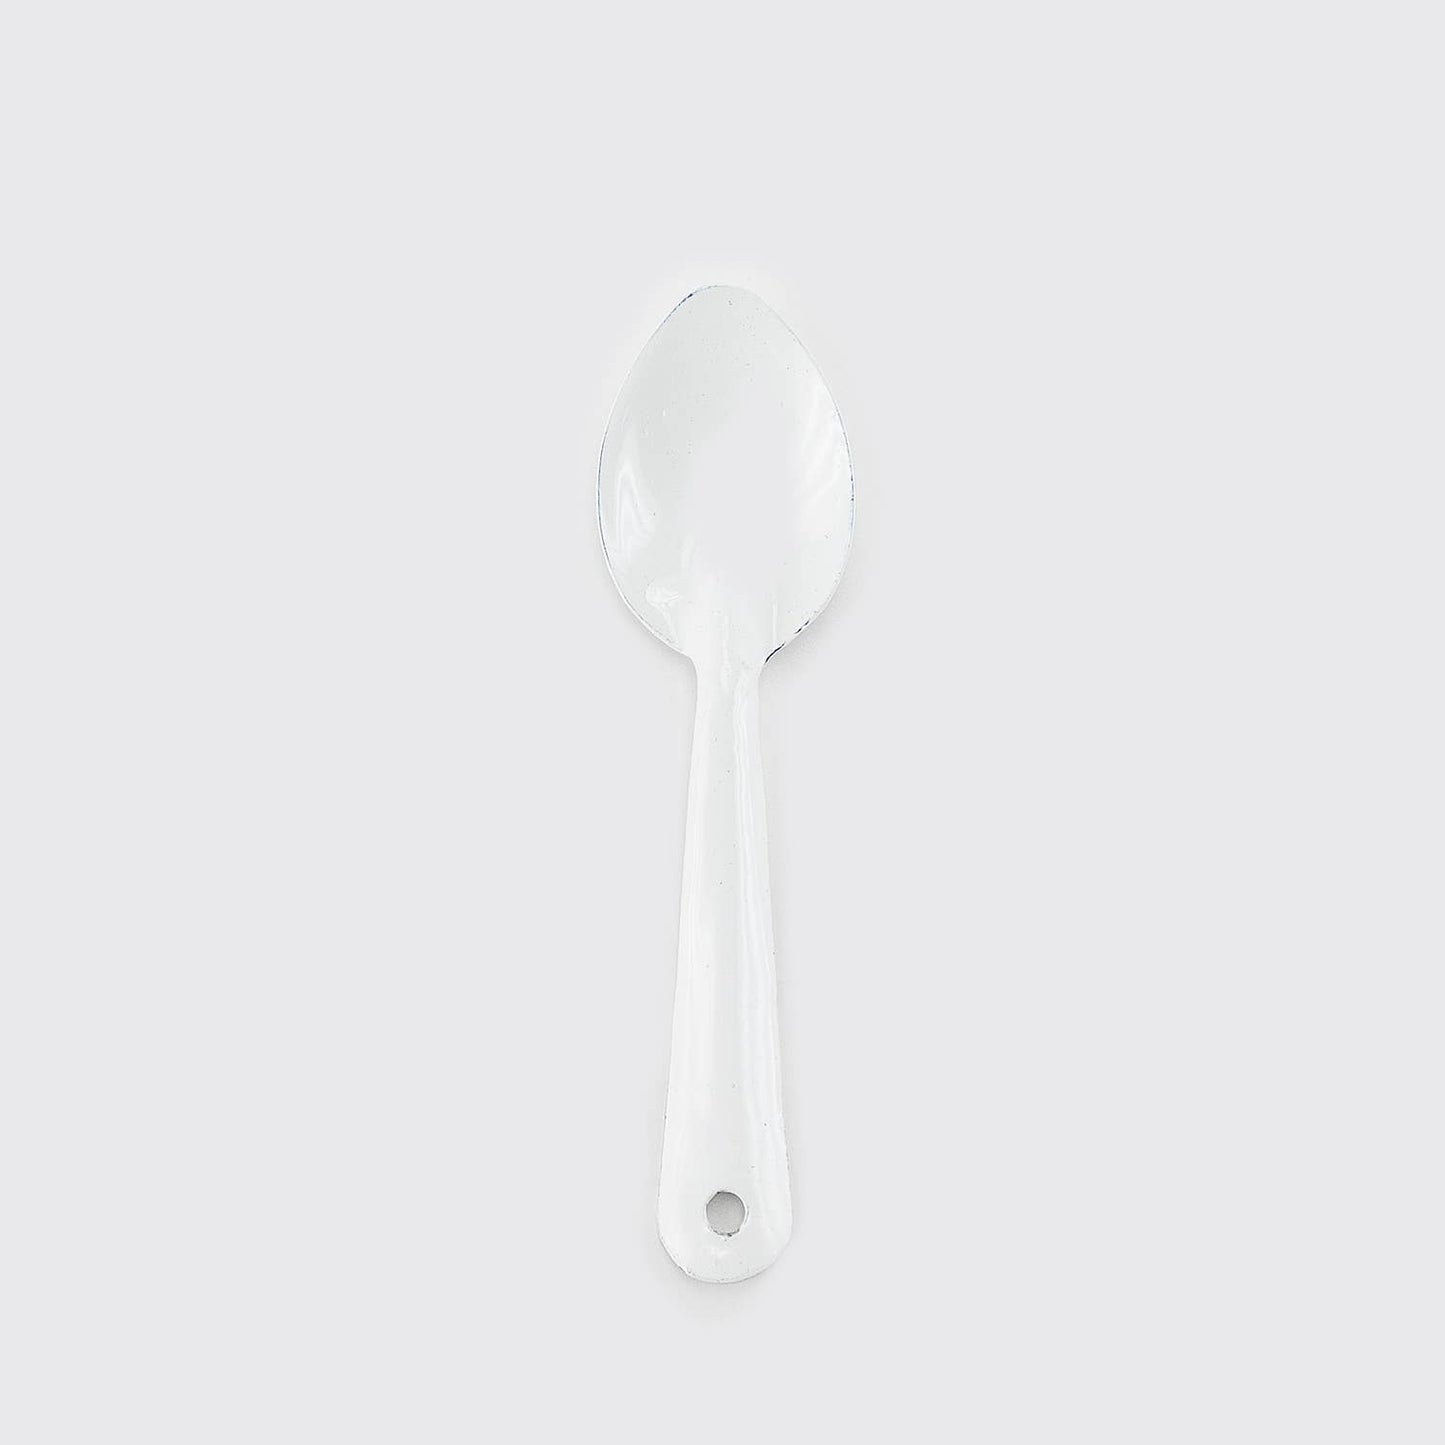 White Enamel Coffee Spoon, 6"